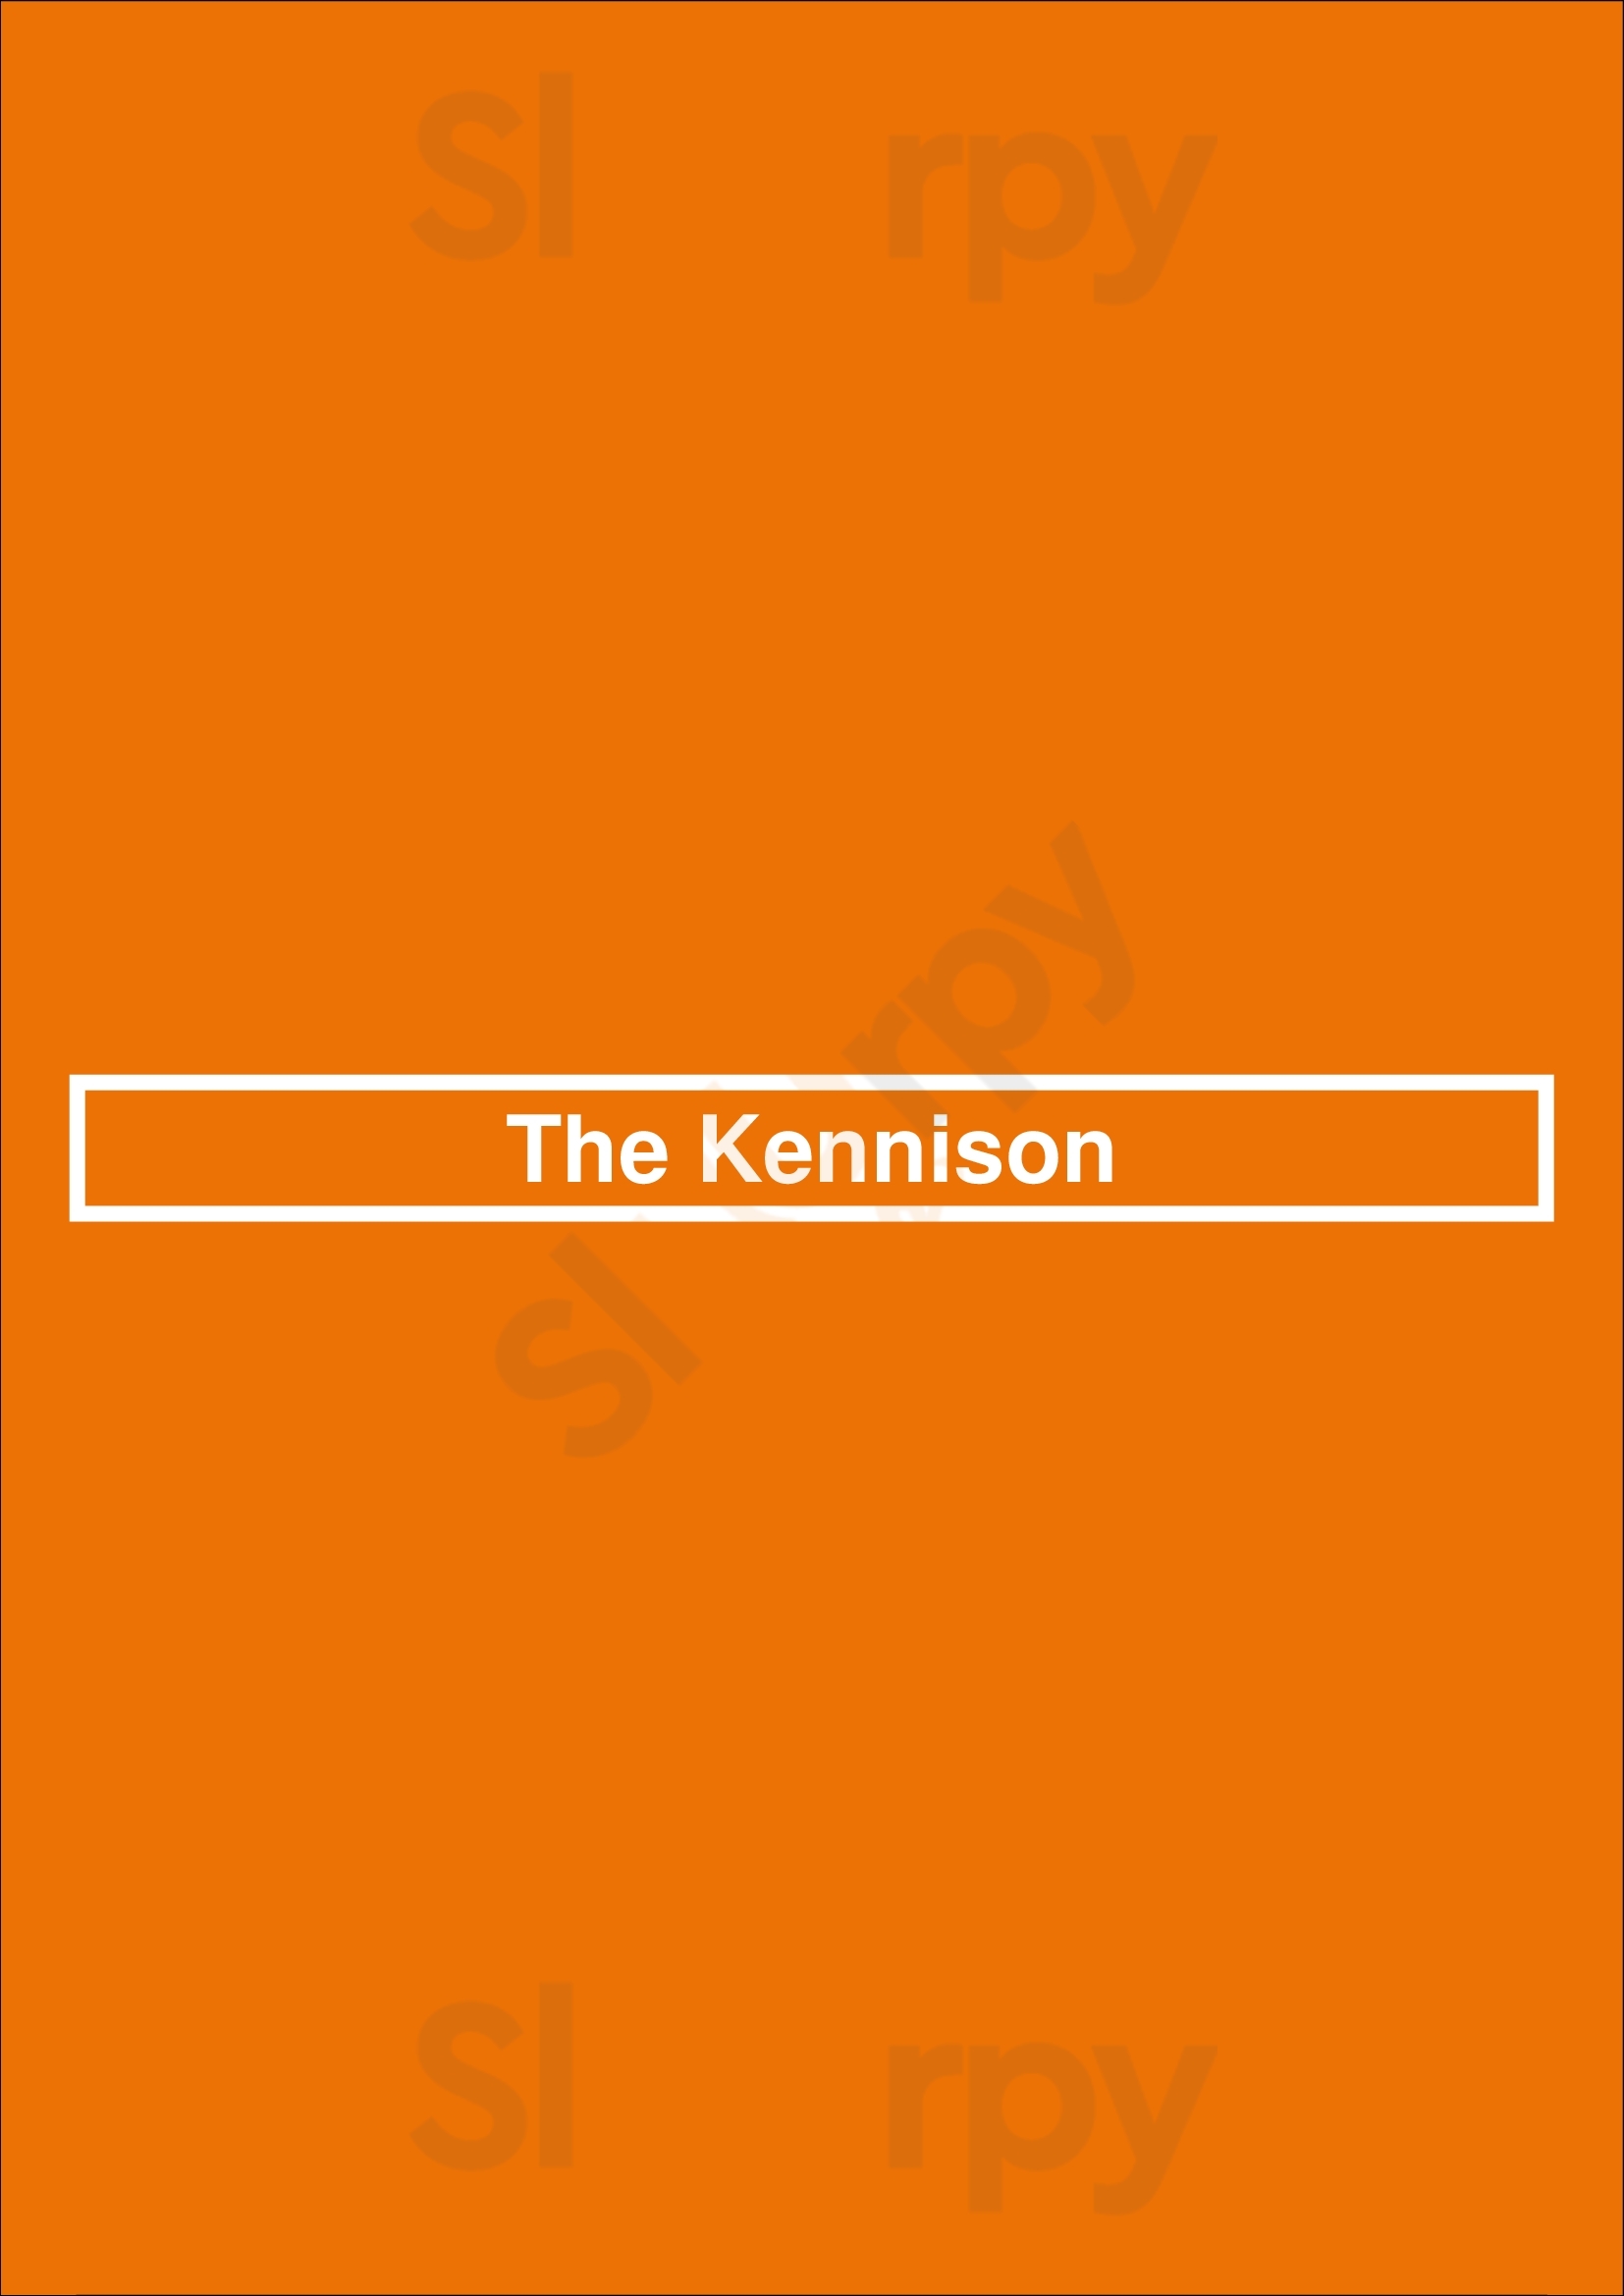 The Kennison Chicago Menu - 1